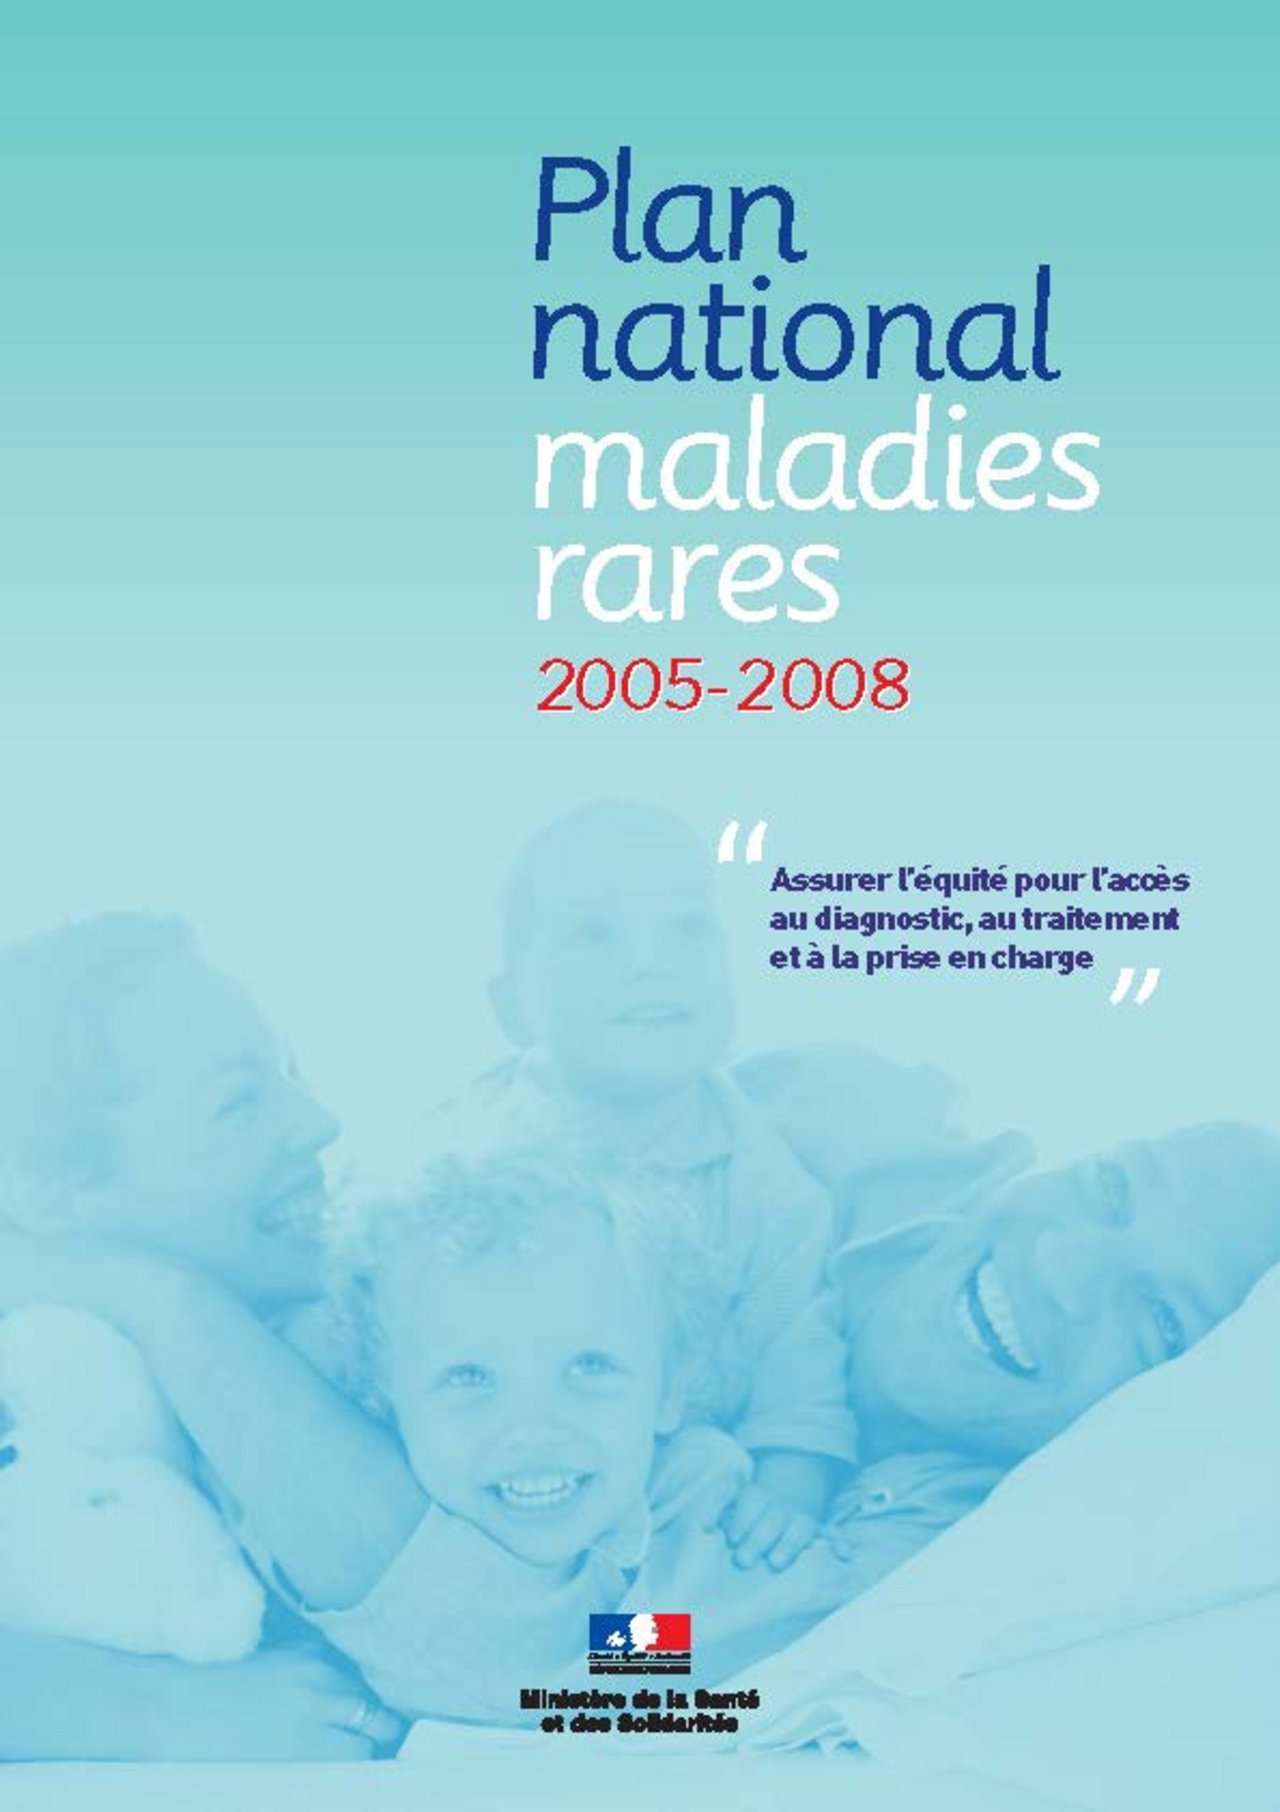 Couverture premier plan maladies rares France 2005 2008